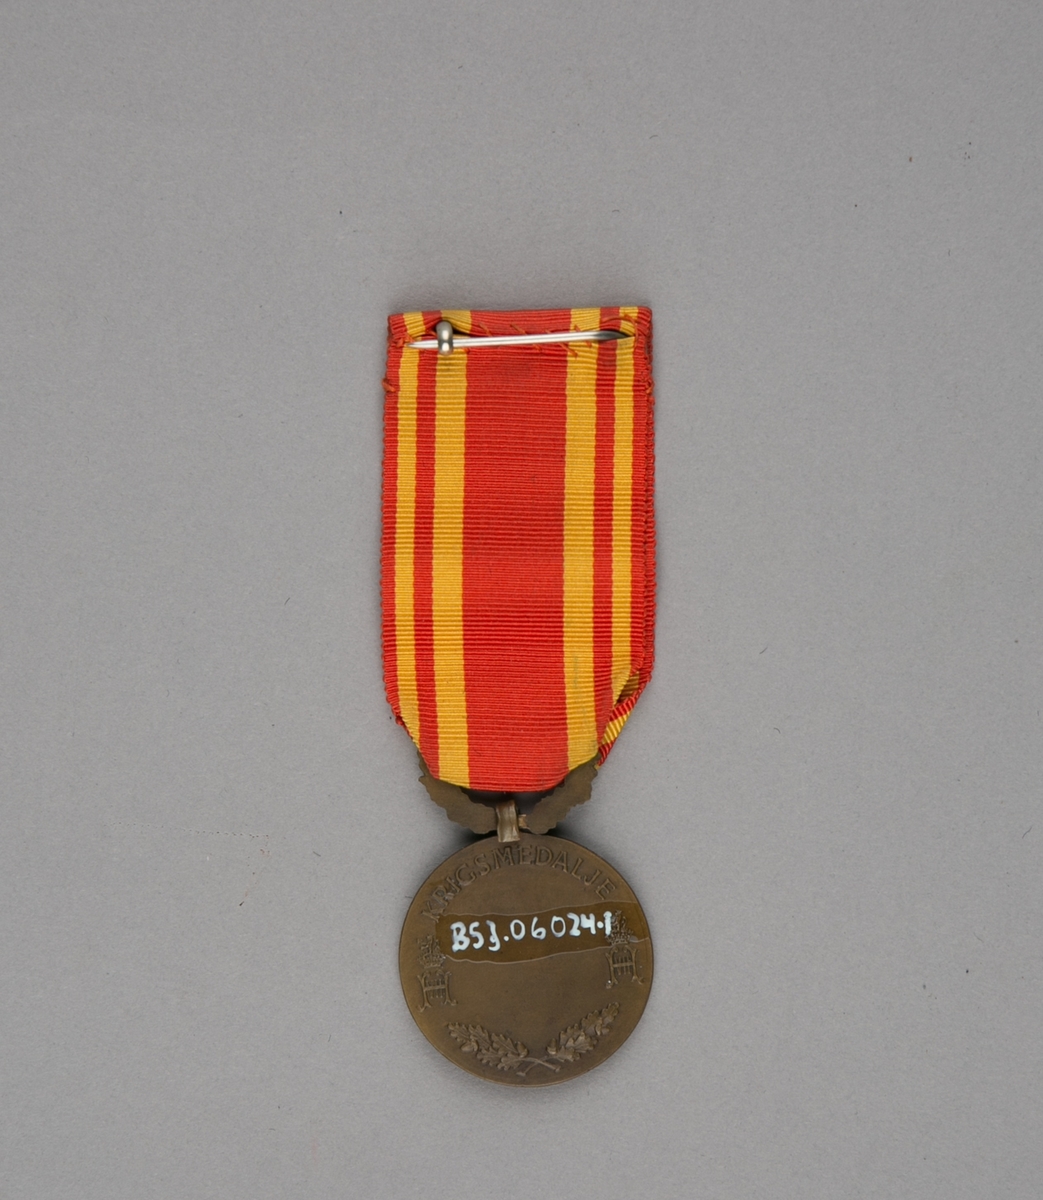 Medalje med relieff av Kong Haakon VII i profil